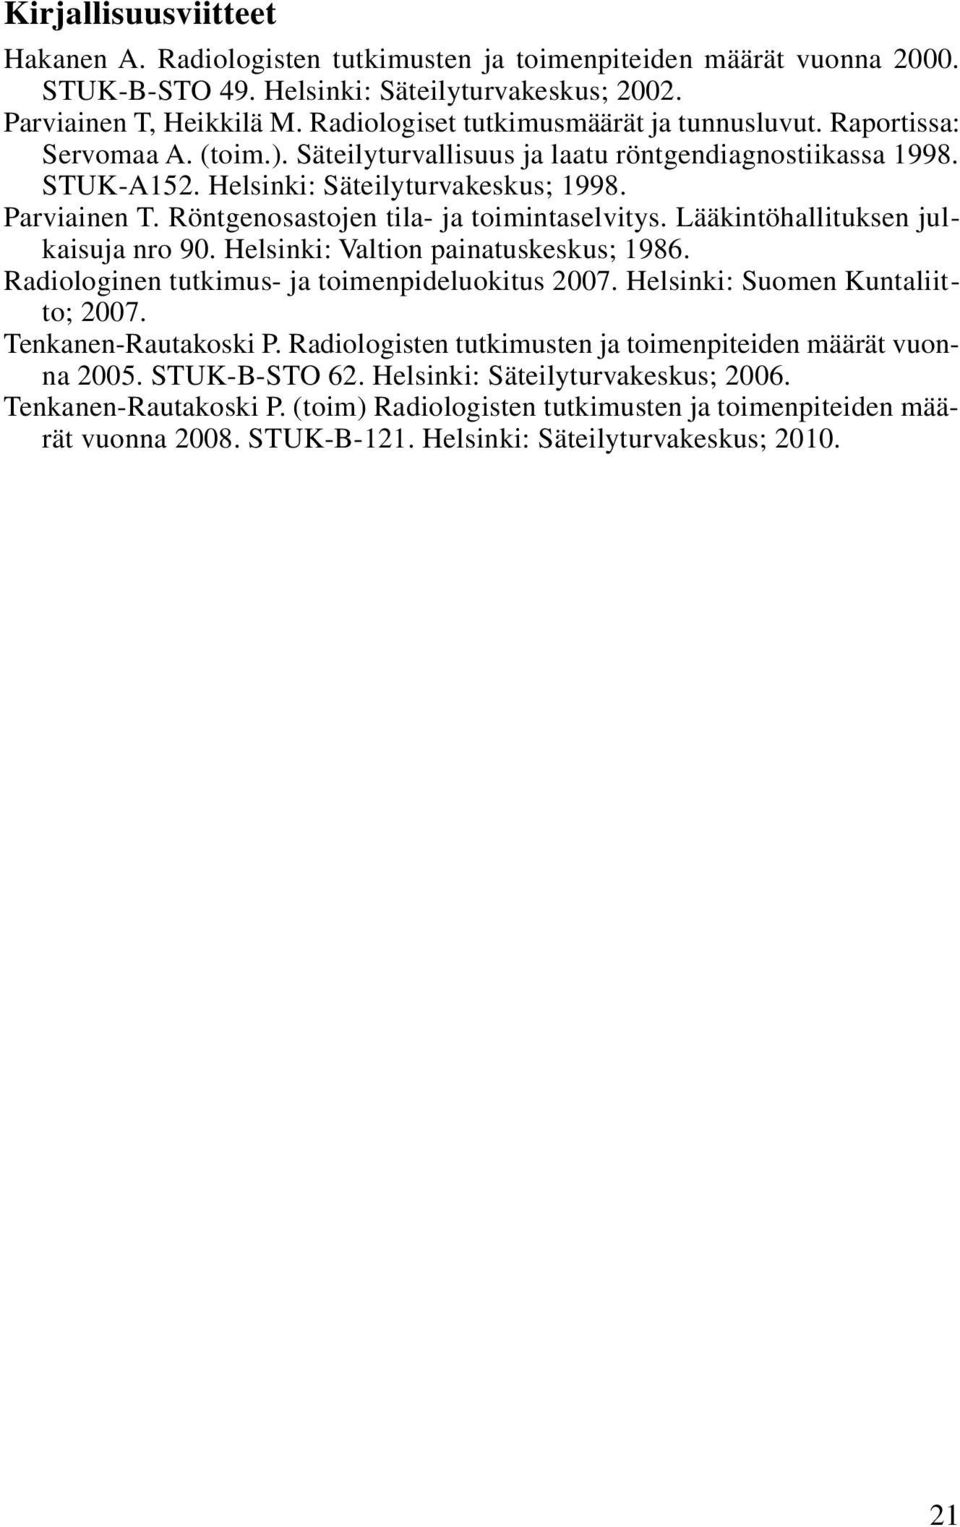 Röntgenosastojen tila- ja toimintaselvitys. Lääkintöhallituksen julkaisuja nro 90. Helsinki: Valtion painatuskeskus; 1986. Radiologinen tutkimus- ja toimenpideluokitus 2007.